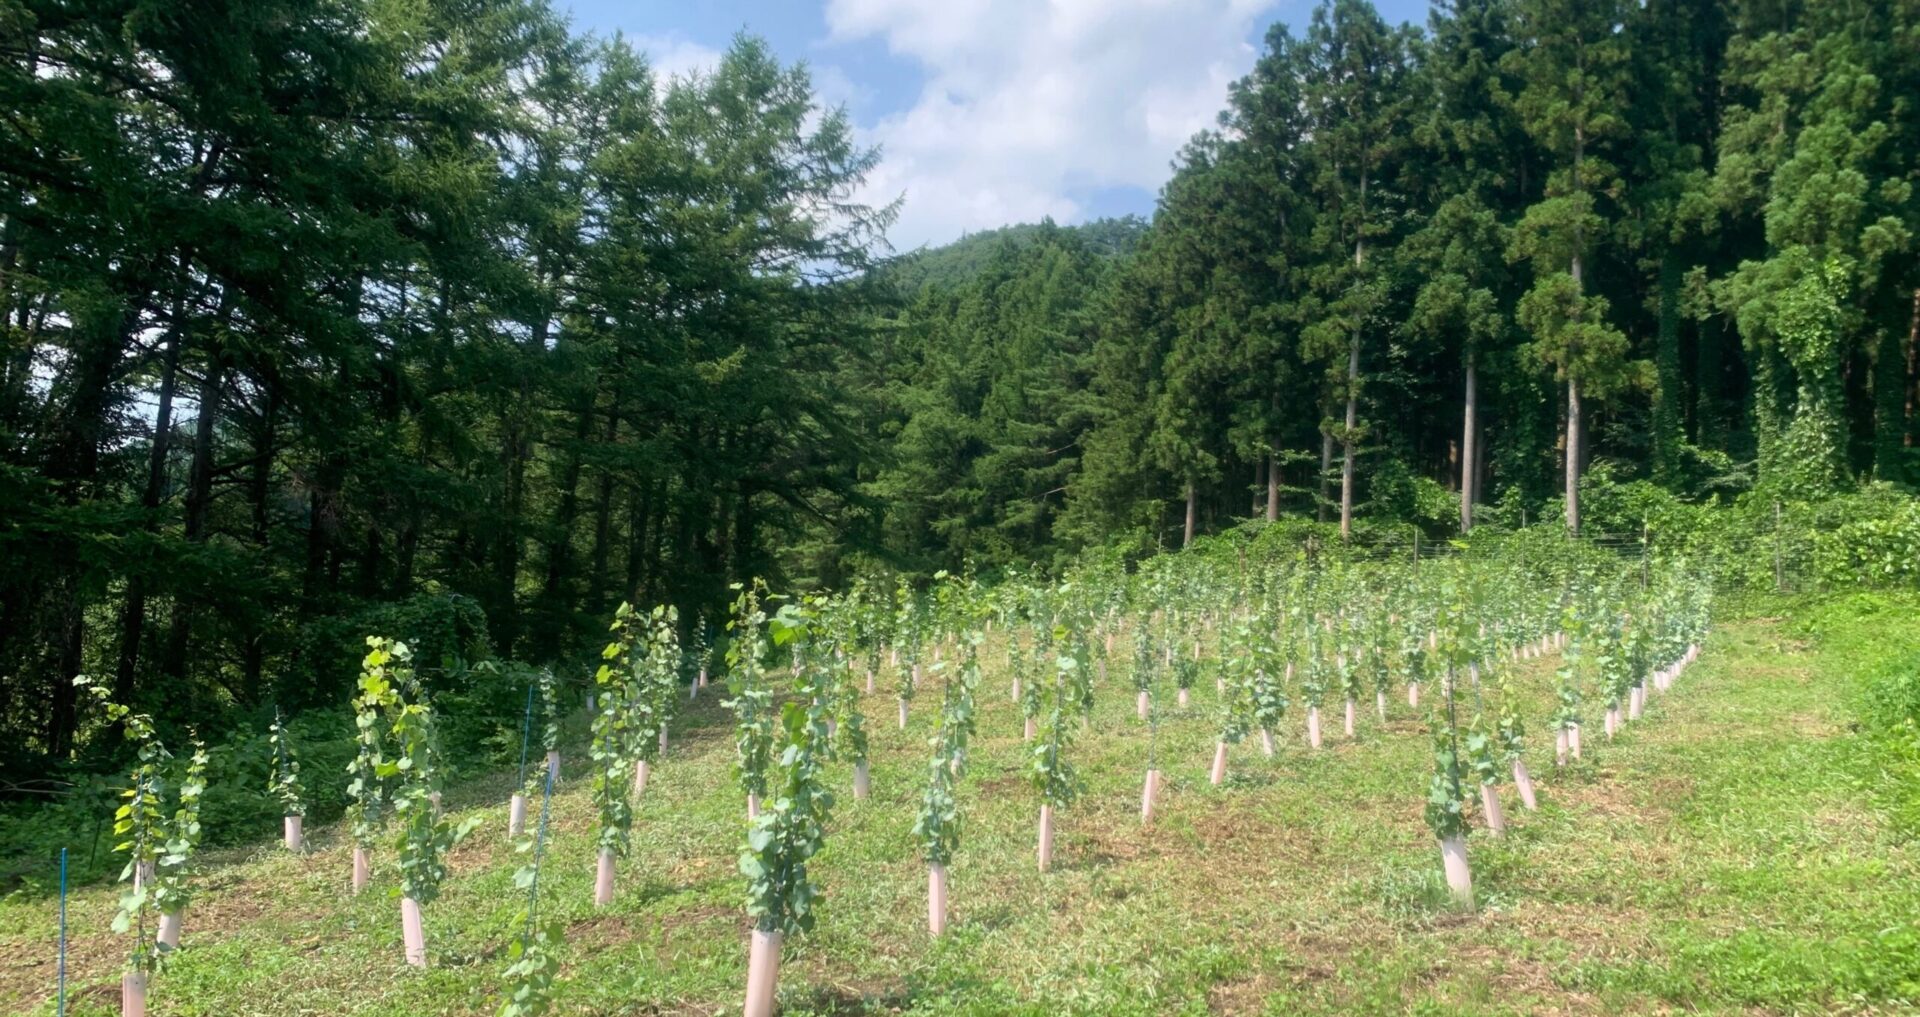 宮城県七ヶ宿町で
ワイン用ぶどう栽培